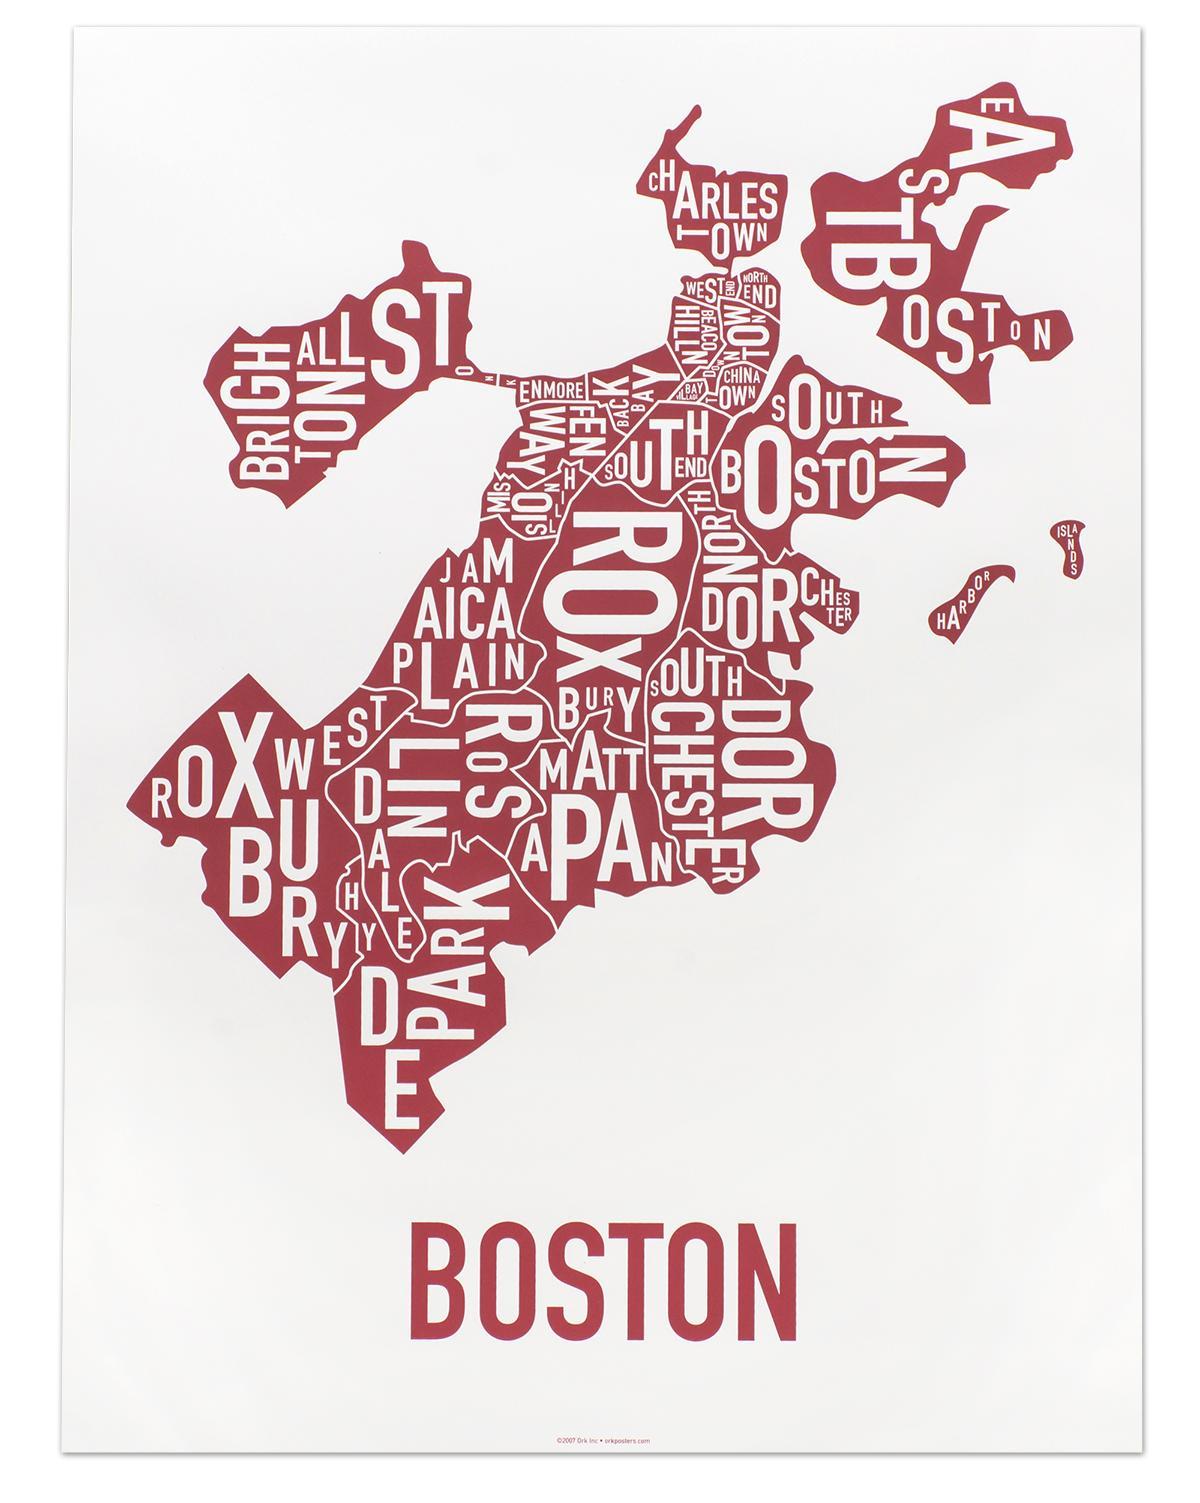 ქალაქ ბოსტონში რუკა